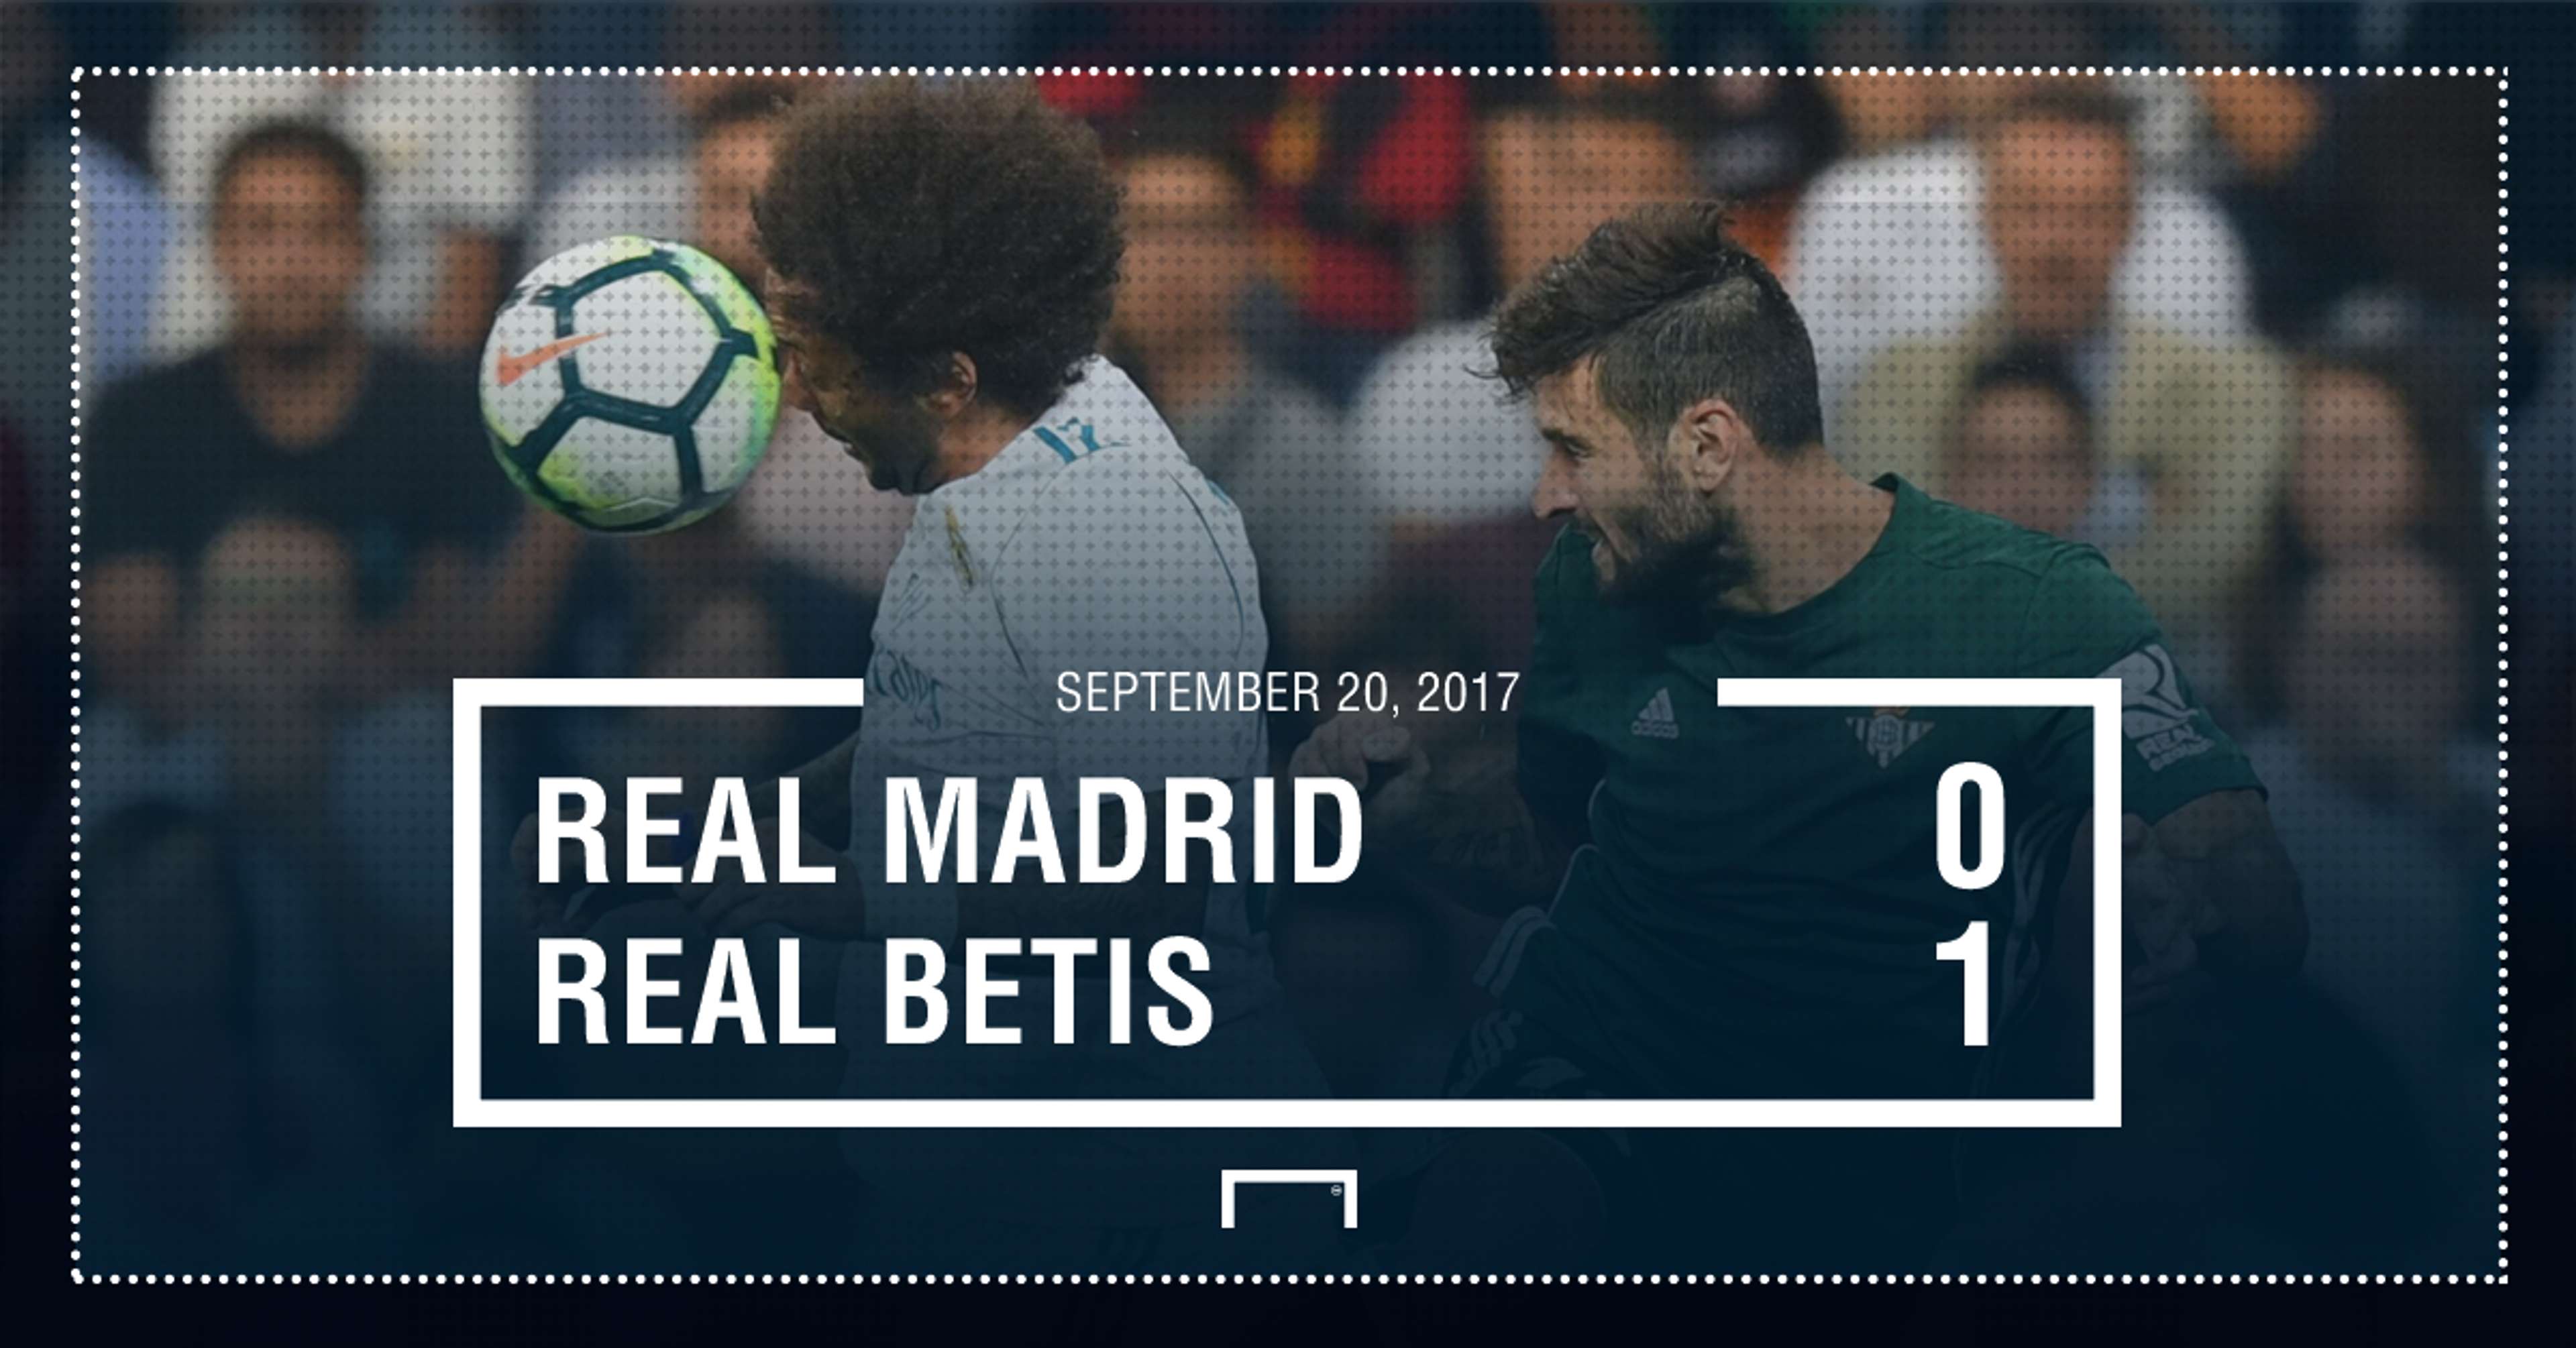 Real madrid Betis score